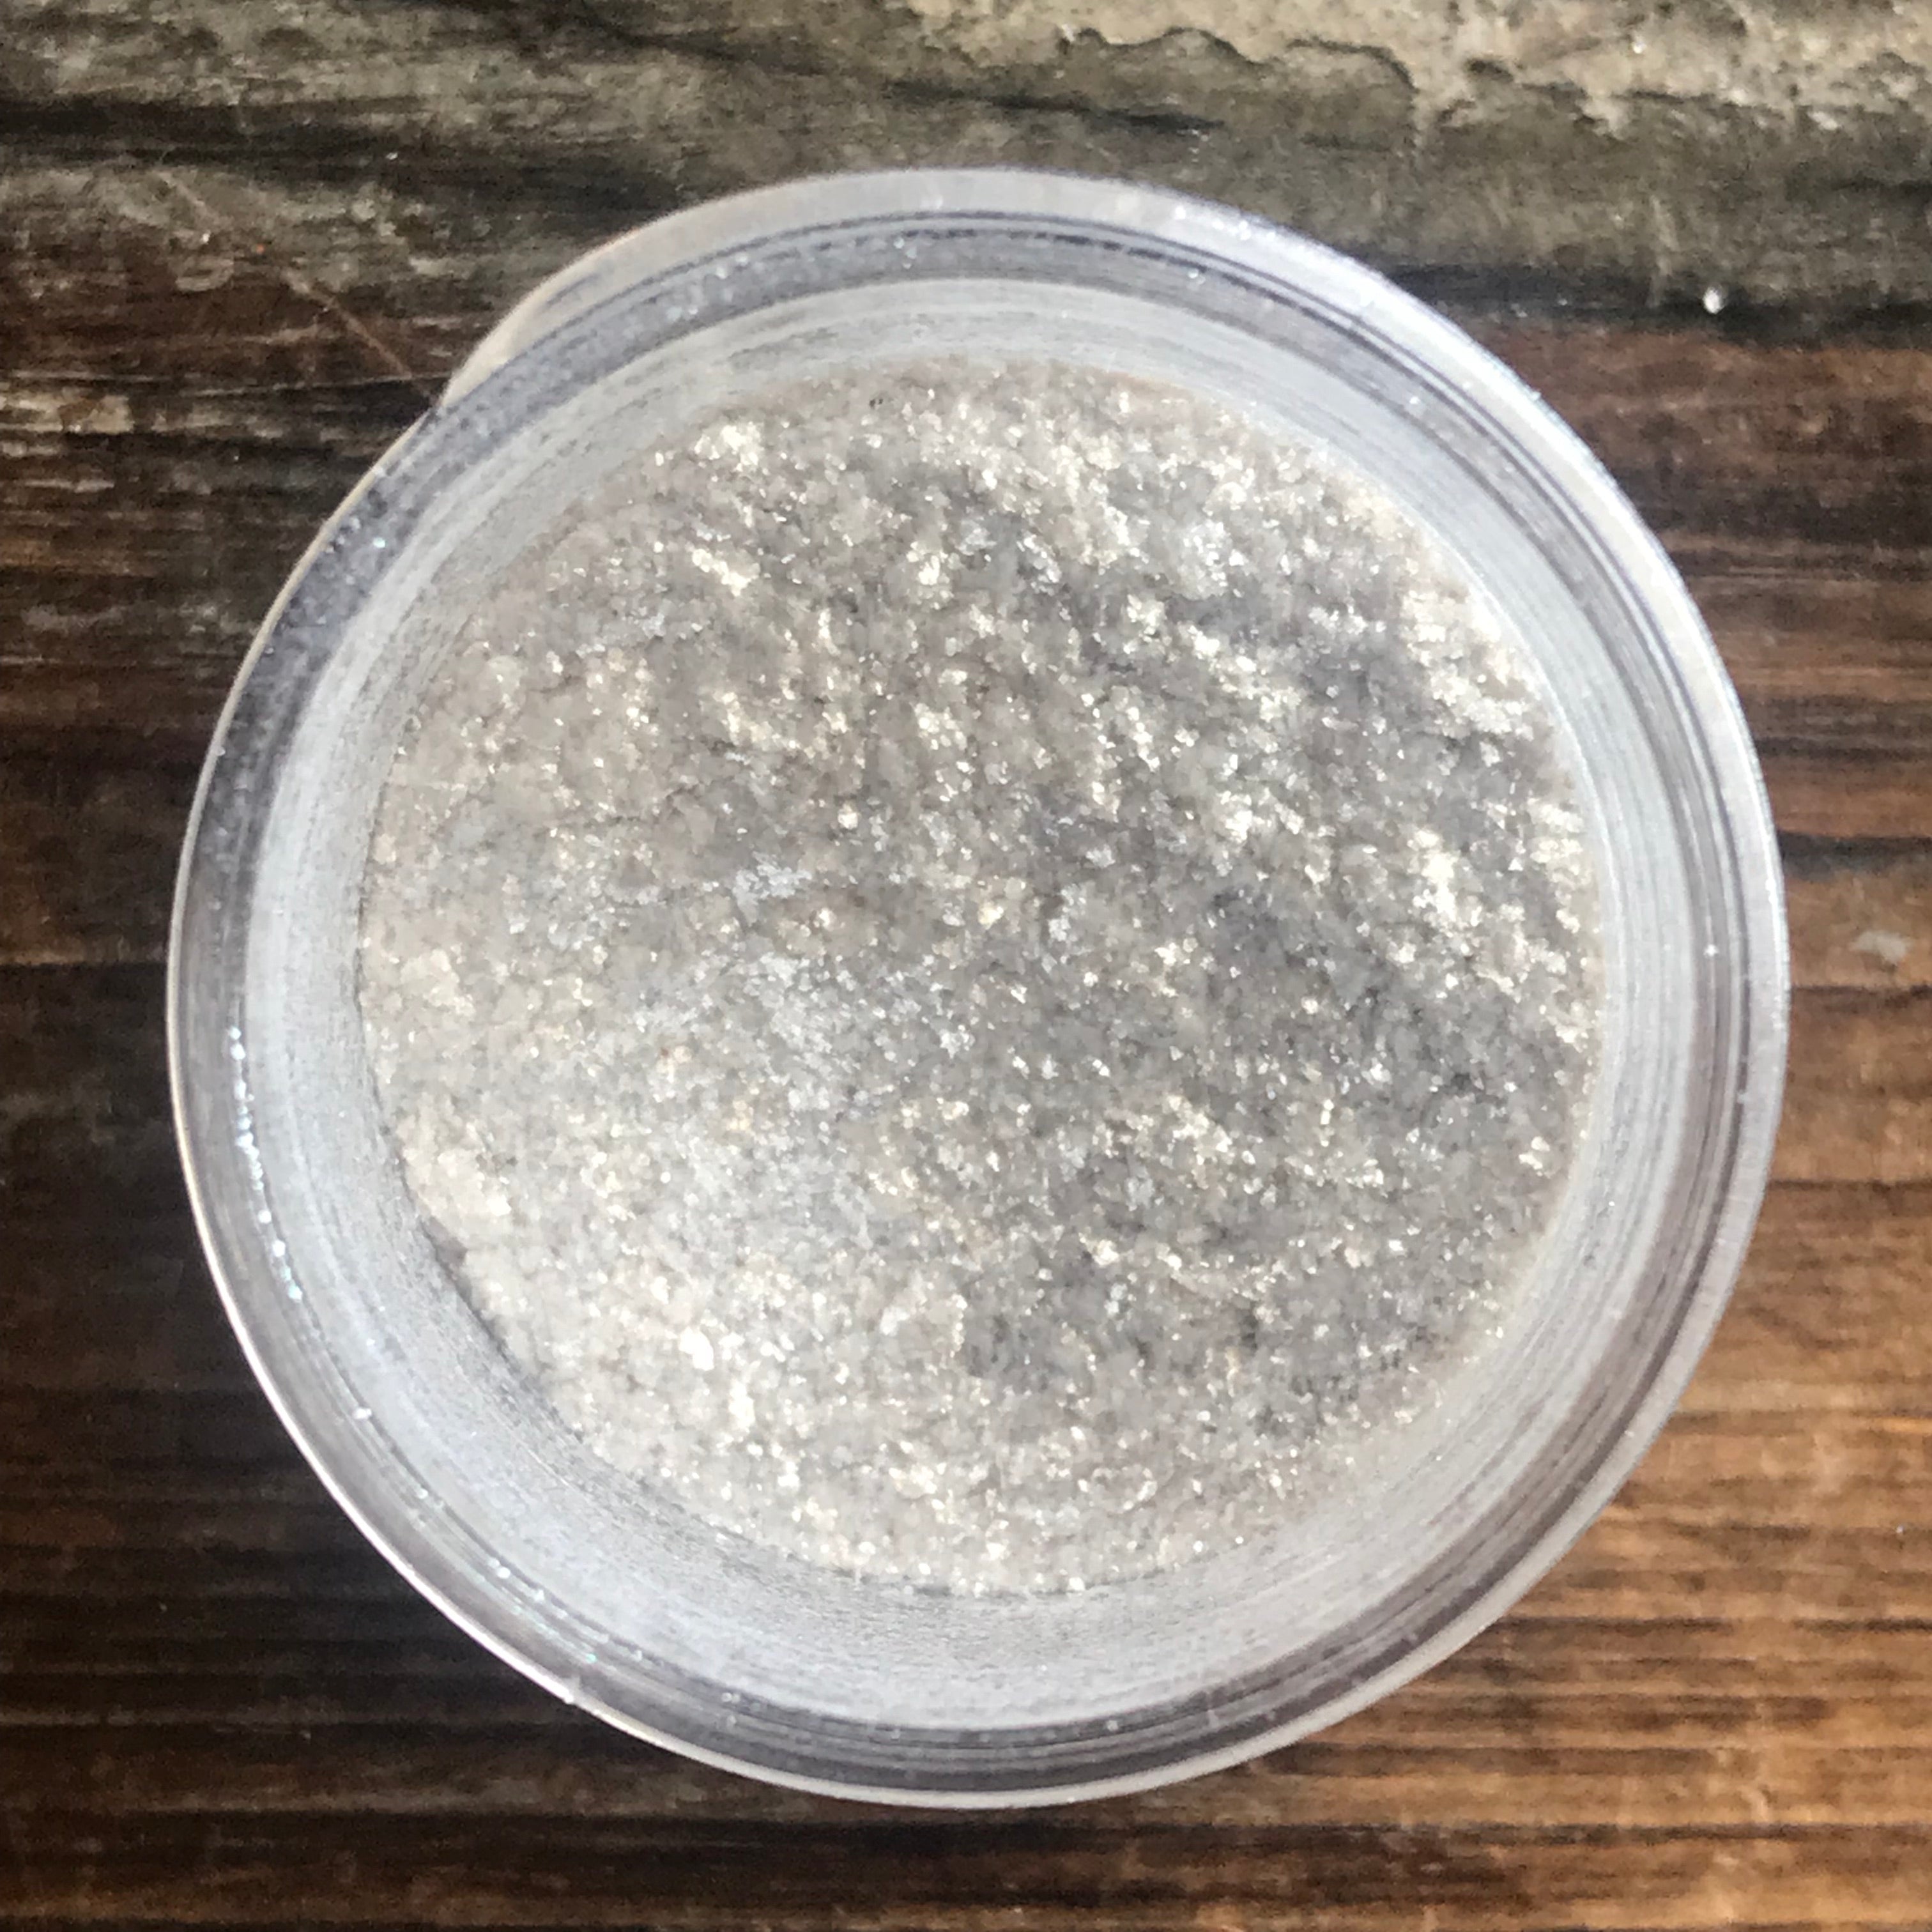  NiHome Edible Food-Grade Glimmer Powder Glitter